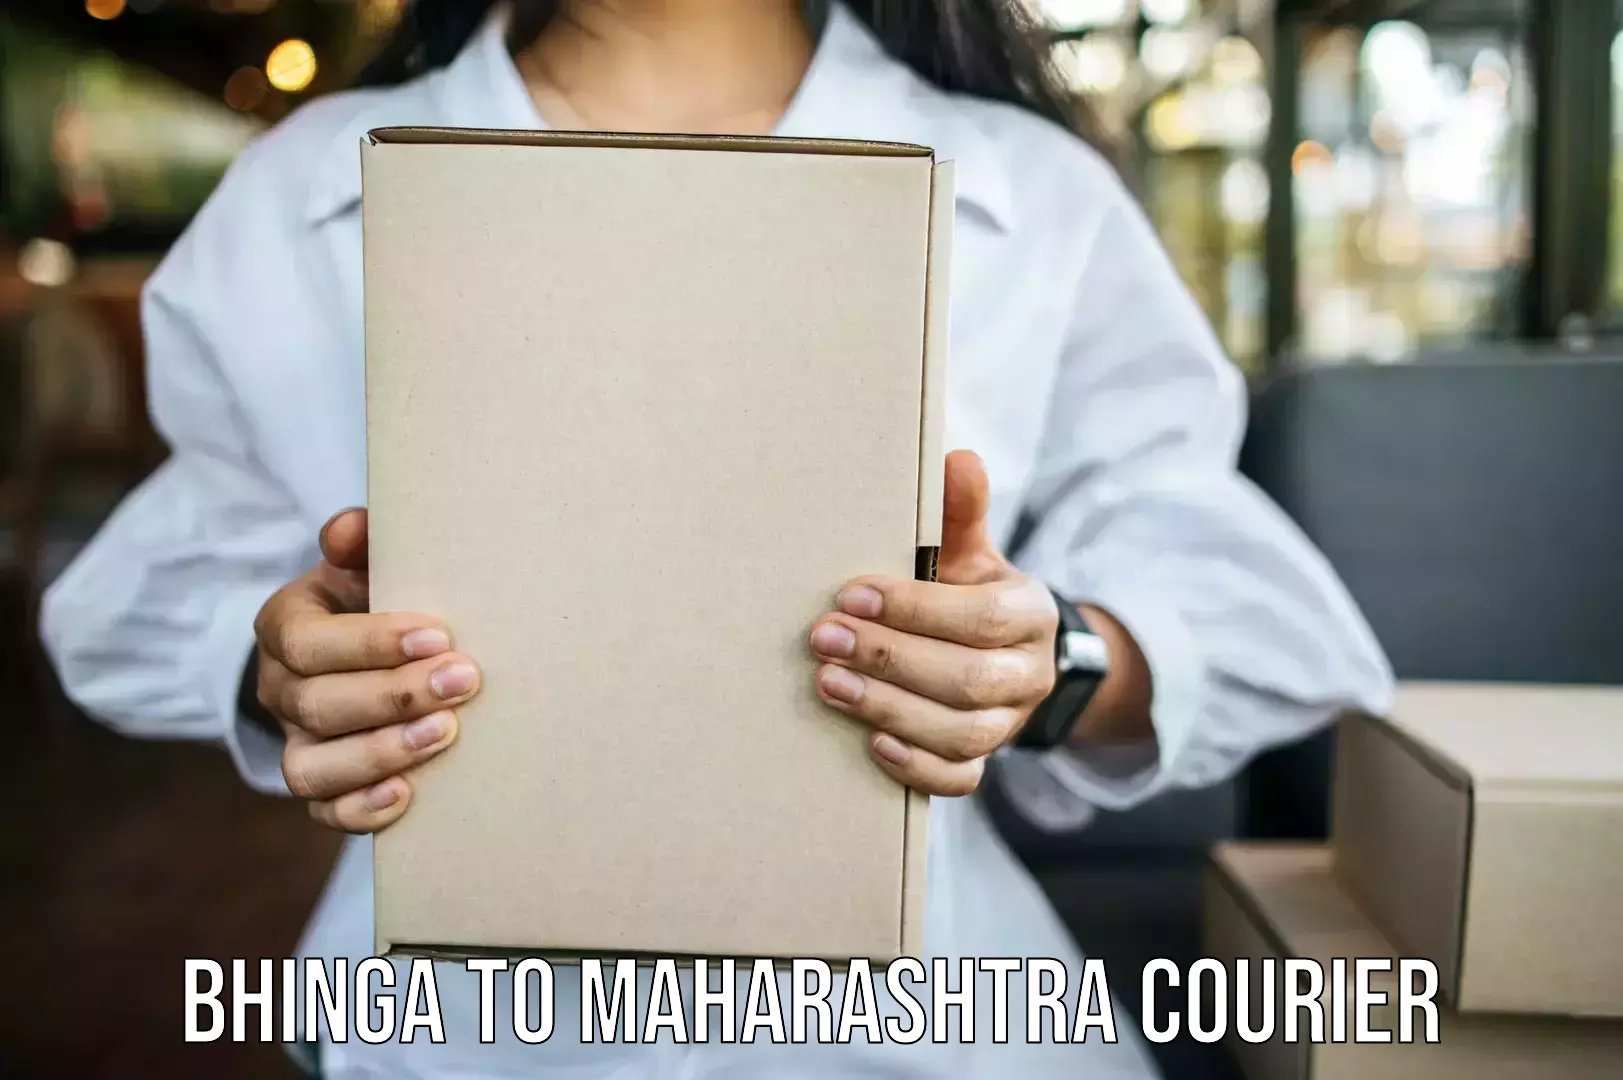 Furniture moving and handling Bhinga to Maharashtra